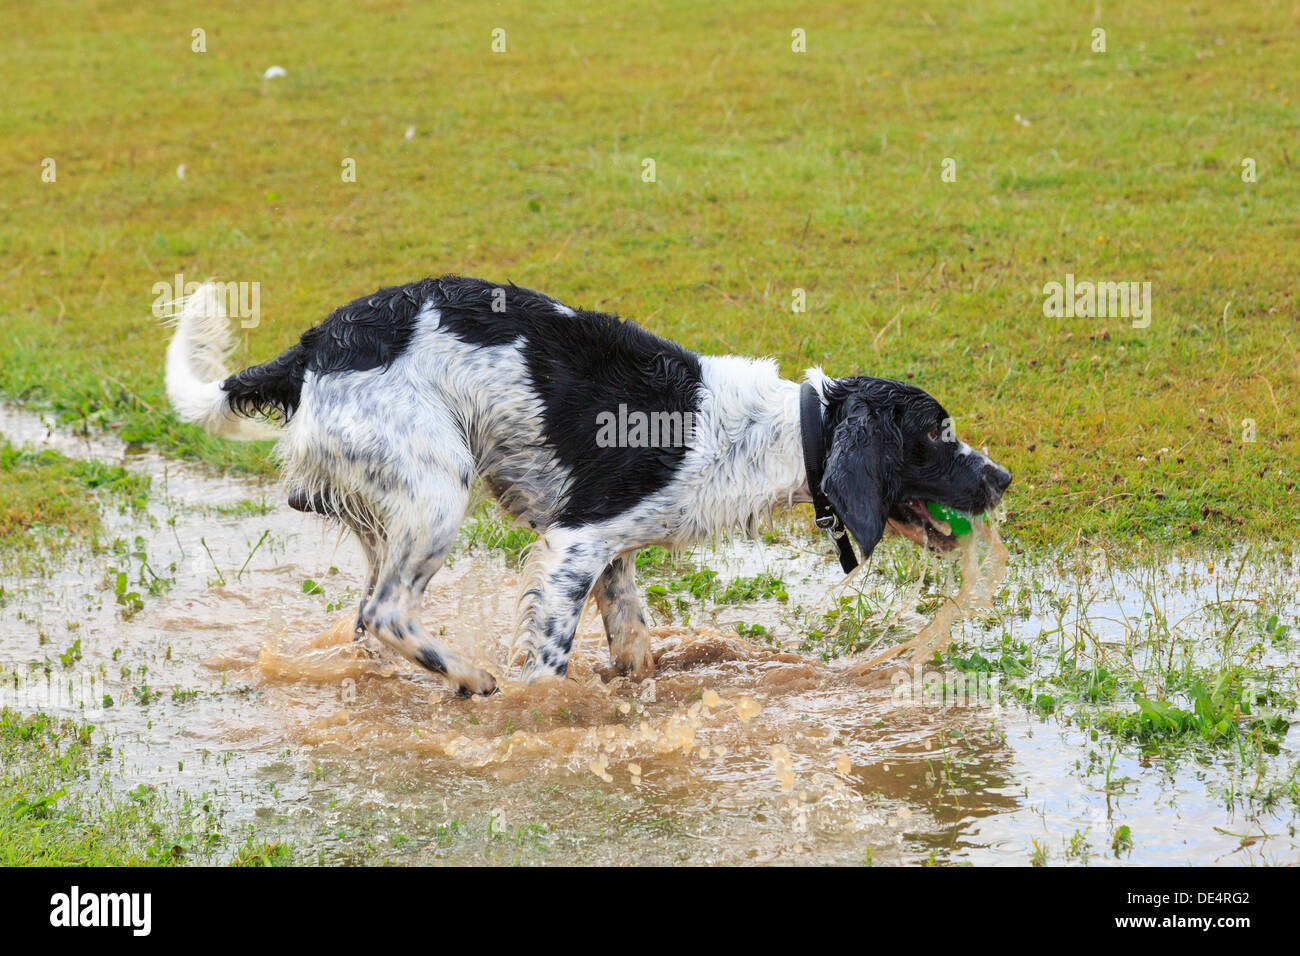 Soaking Wet in bianco e nero English Springer Spaniel cane che corre in una pozza d'acqua per recuperare una palla. Inghilterra, Regno Unito, Gran Bretagna Foto Stock